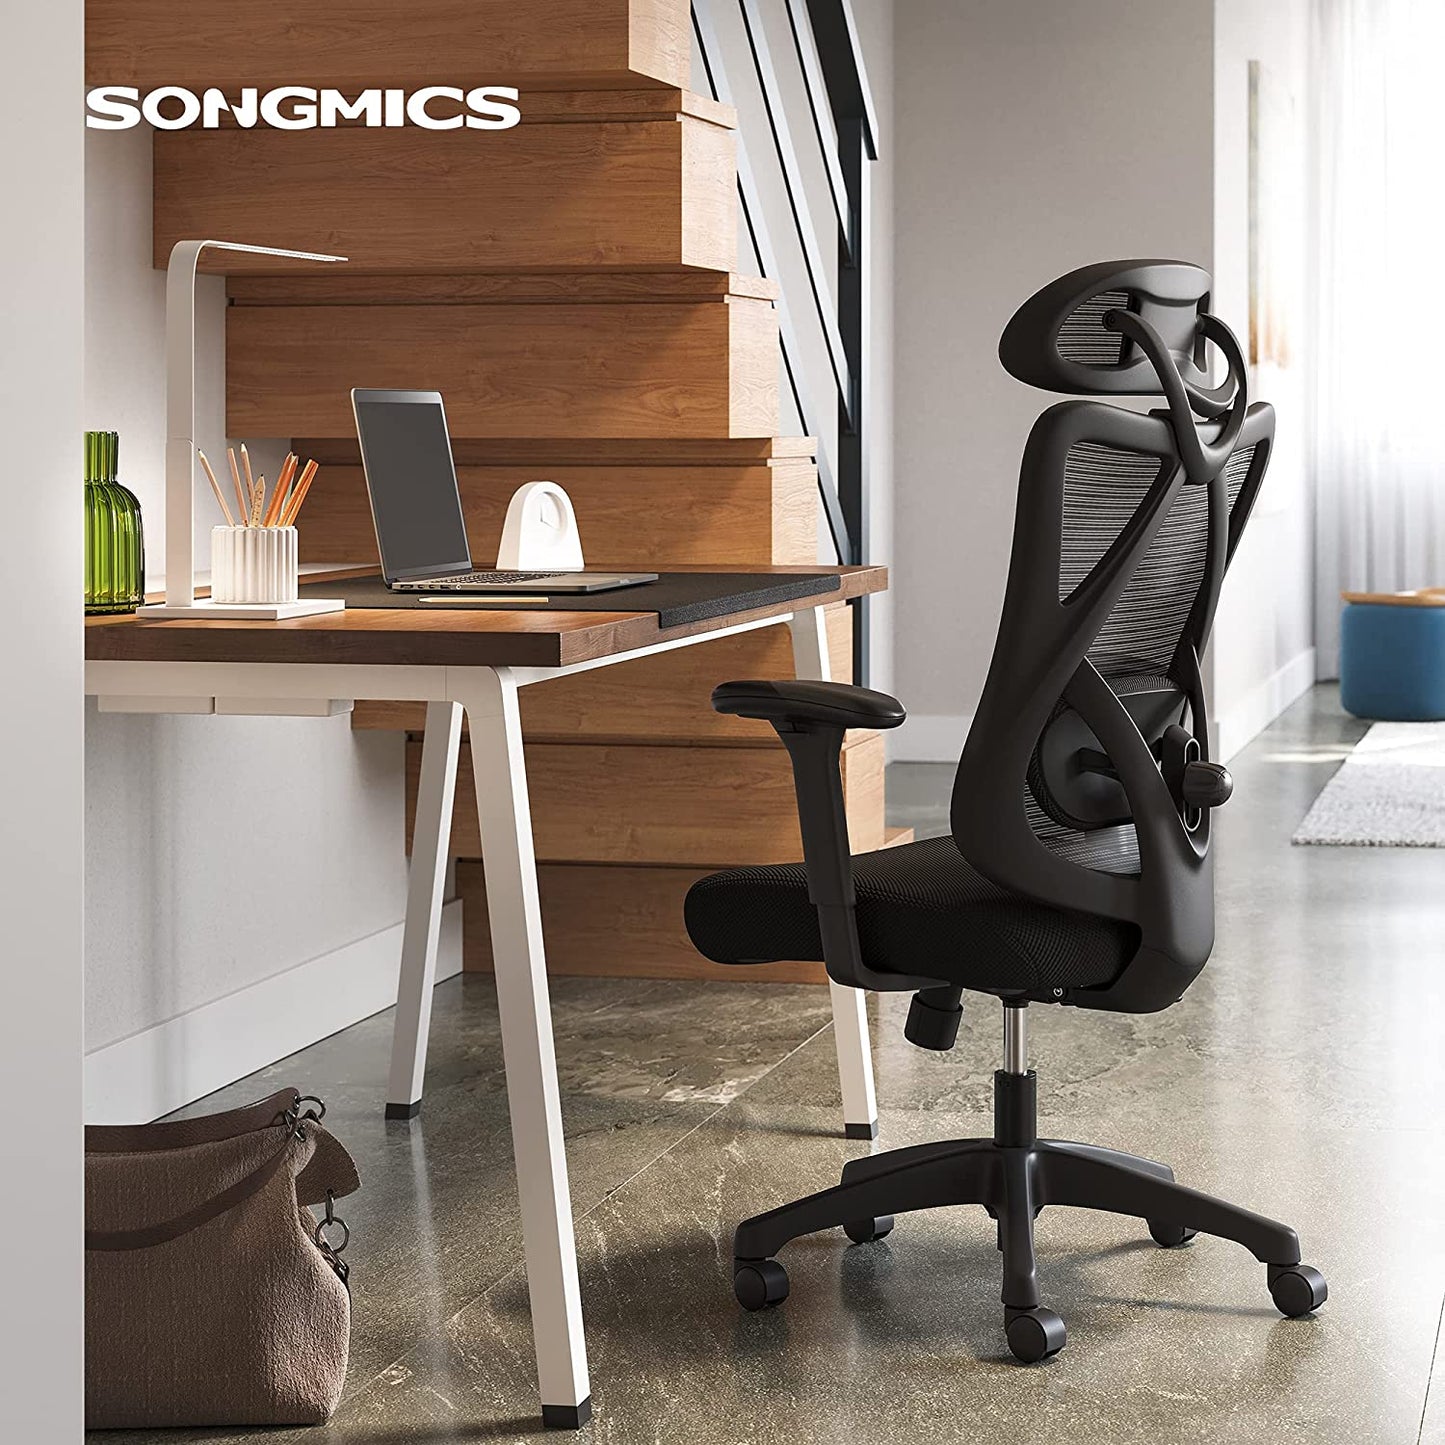 SONGMICS - Silla de oficina, silla de escritorio ergonómica, silla de computadora, soporte lumbar ajustable y reposacabezas, cargable hasta 150 kg